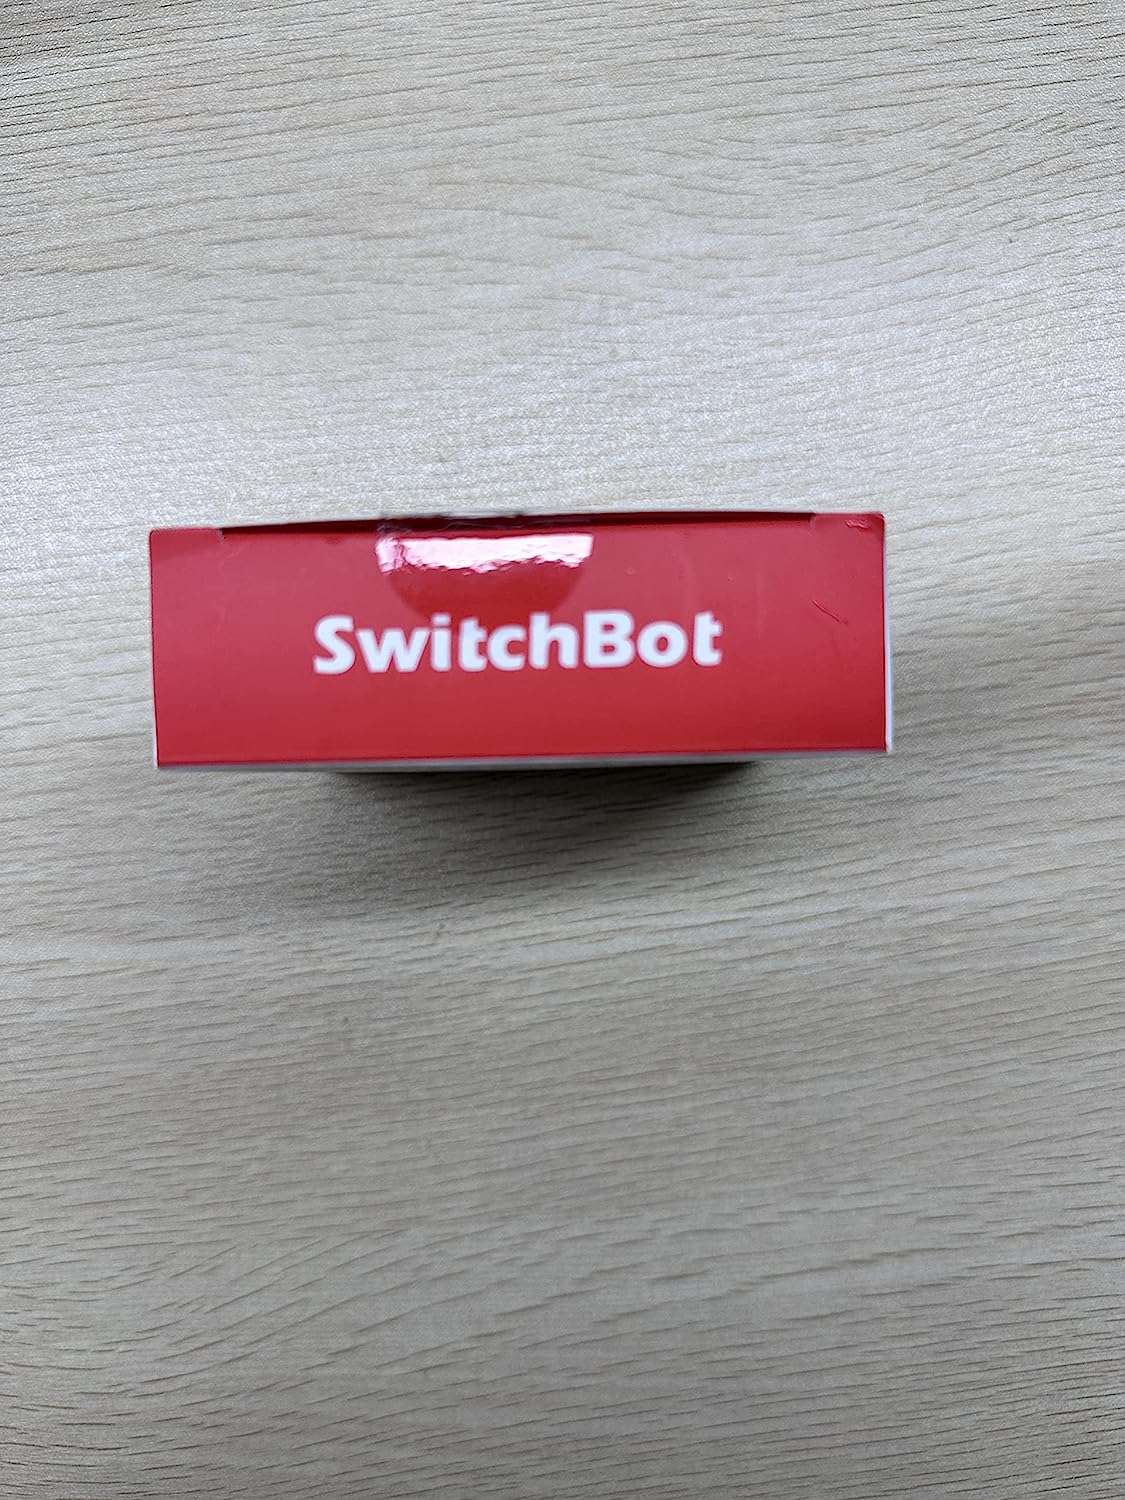 SwitchBot Door Alarm Contact Sensor - Smart Home Security Wireless Window Alarm and Door Sensor, Add SwitchBot Hub to Make it Compatible with Alexa